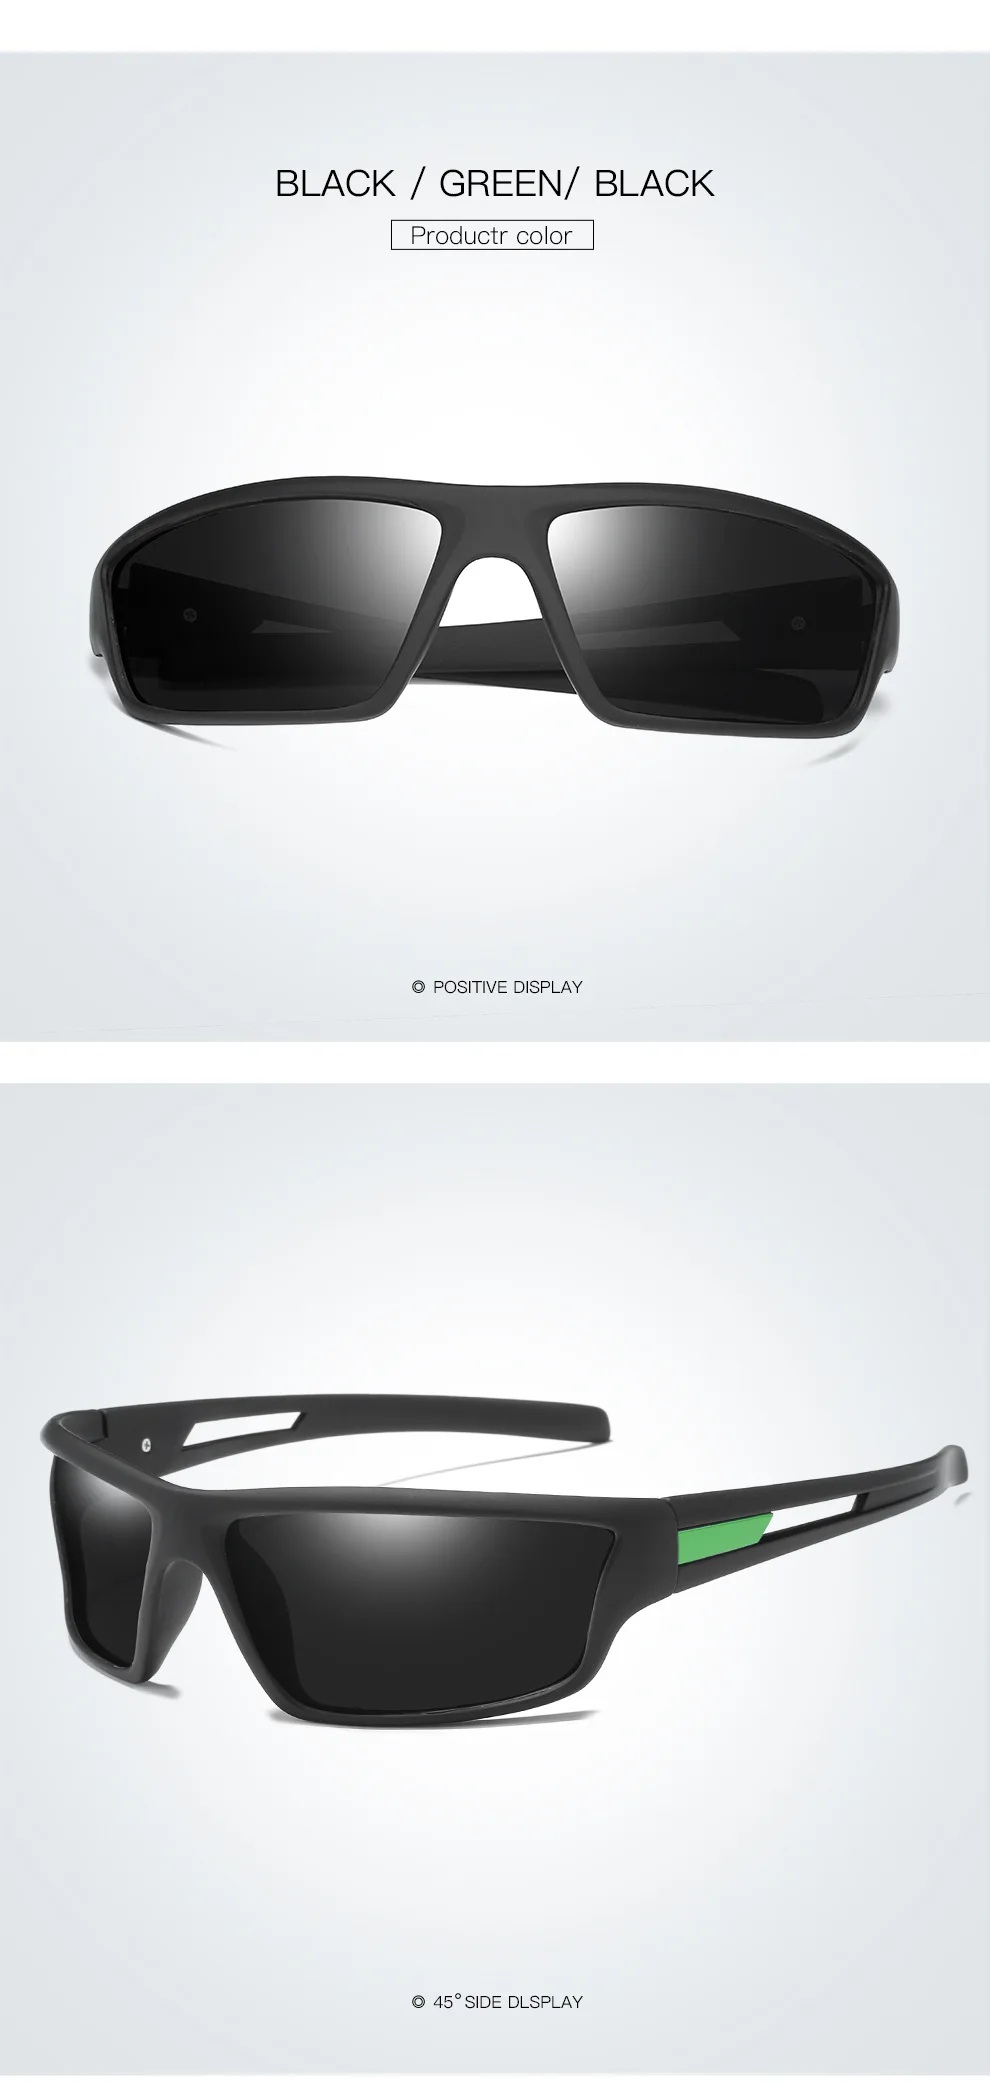 AIELBRO спортивные поляризованные солнцезащитные очки TAC объектив UV400 Открытый велосипед Gafas-Ciclismo очки для рыбалки и вождения велосипед солнцезащитные очки